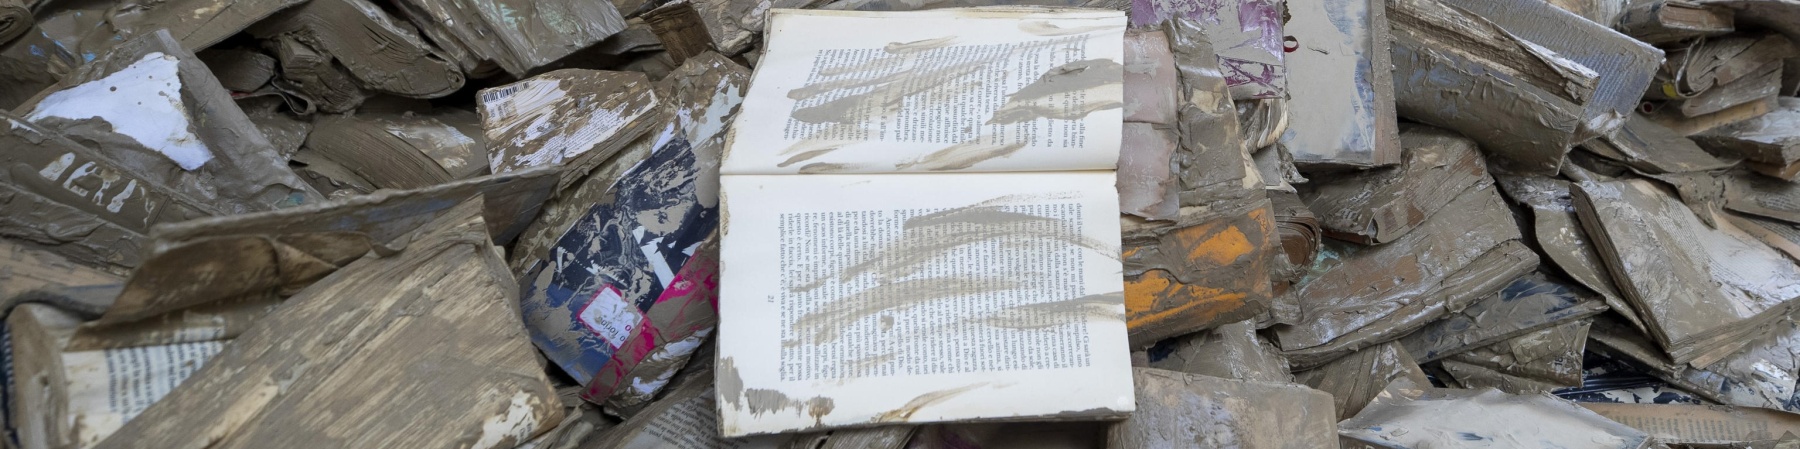 Una pila di libri distrutti dal fango.